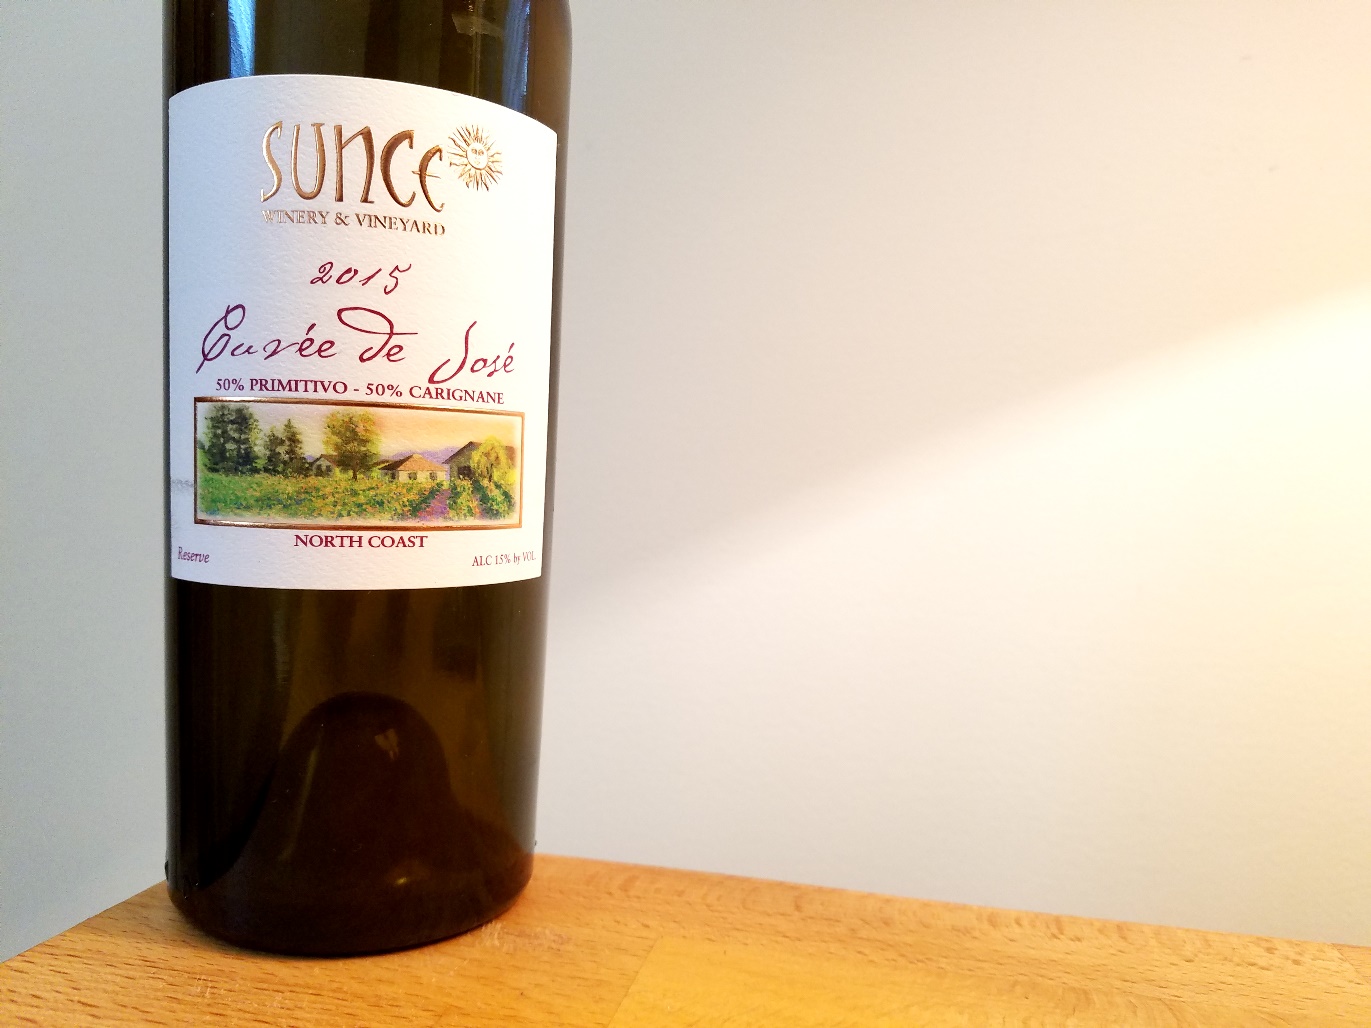 Sunce Winery & Vineyard, Reserve Cuvée de José 2015, North Coast, California, Wine Casual